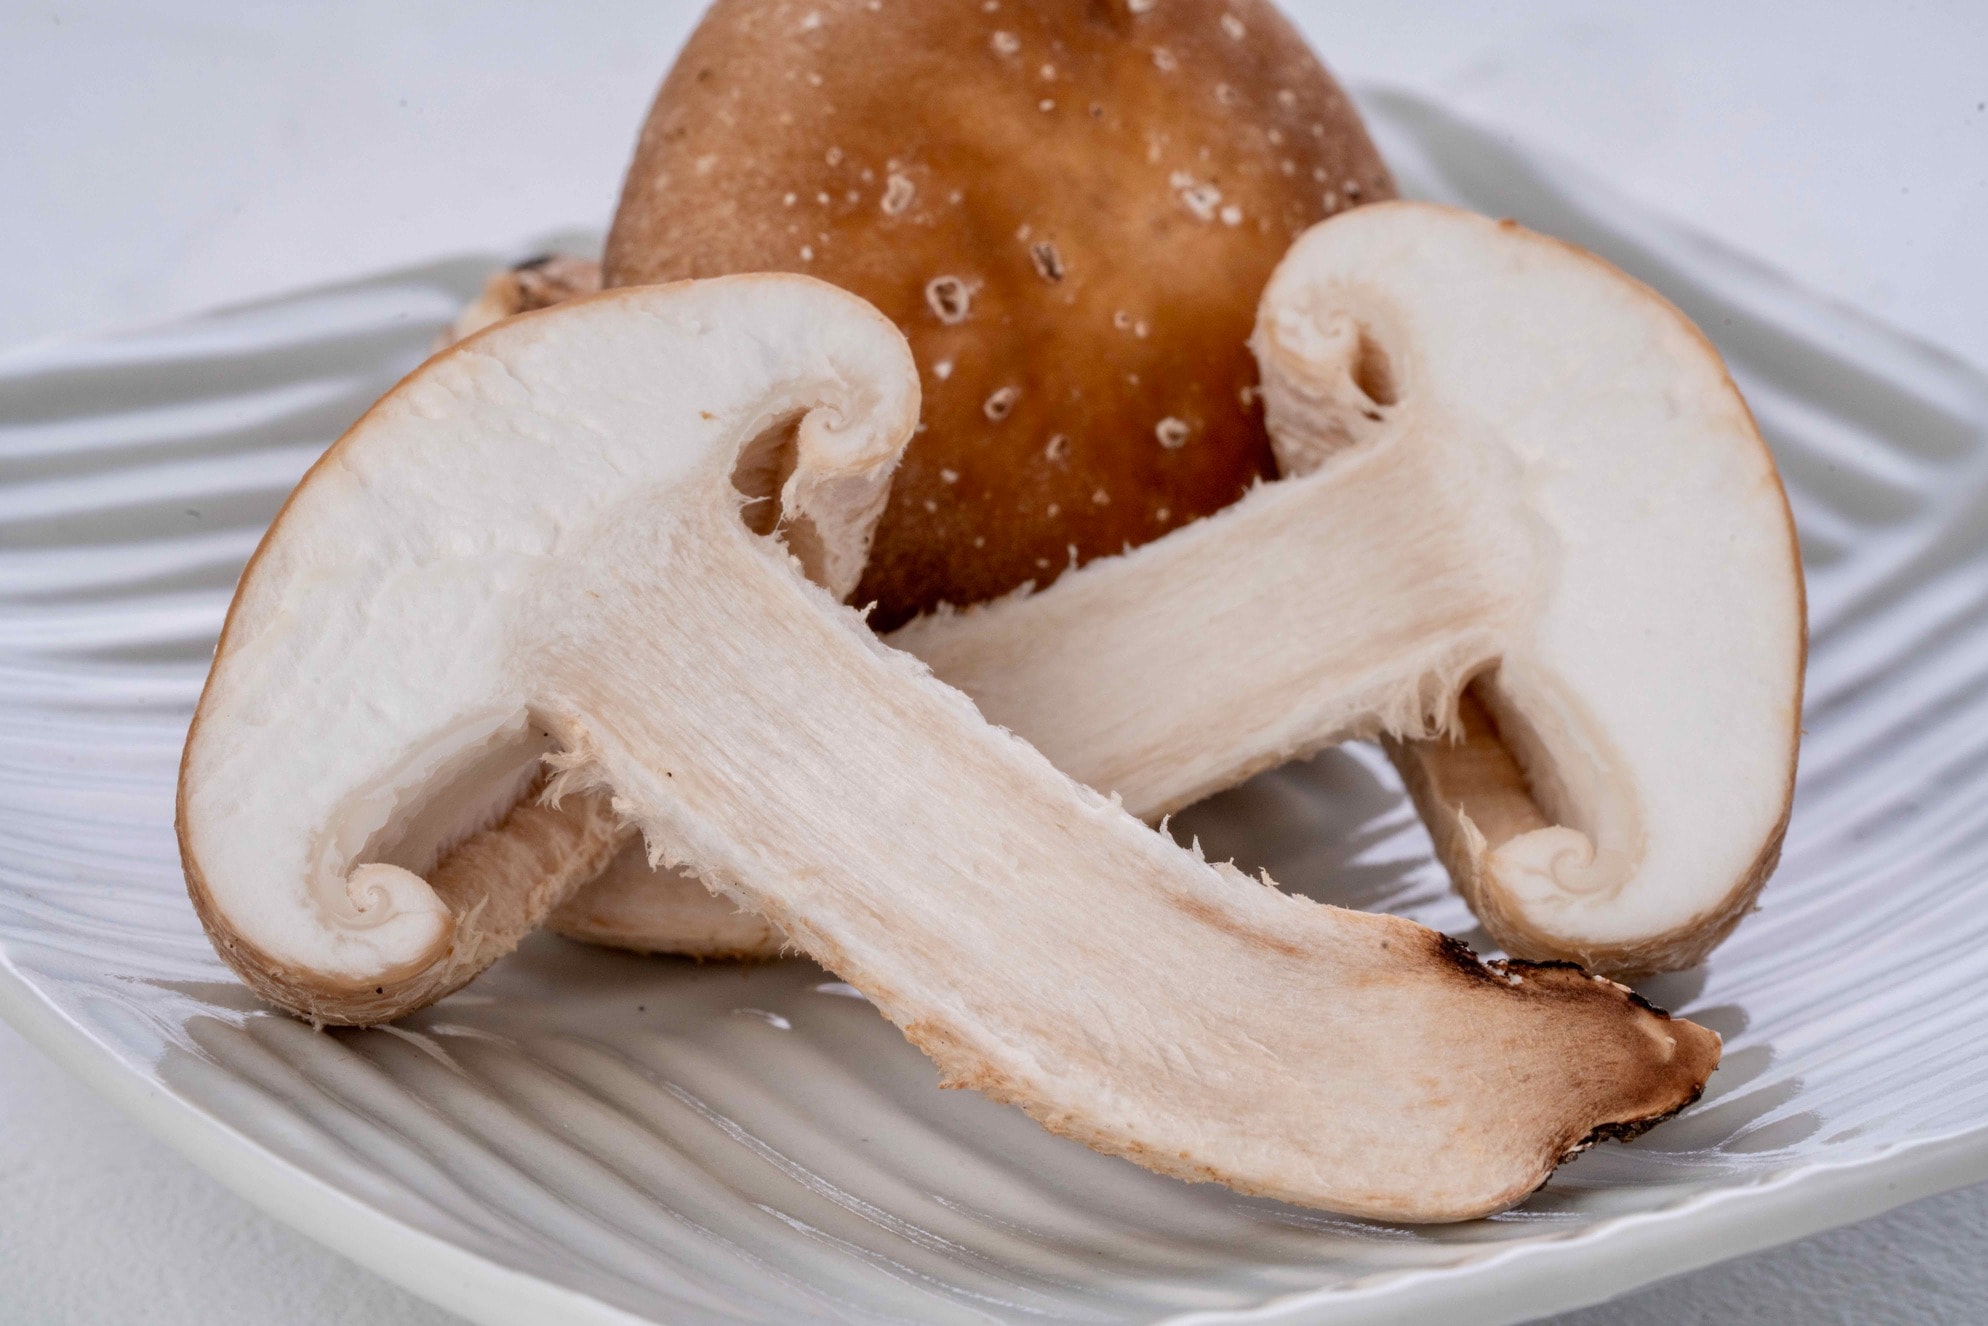 原木栽培の生椎茸を半分にカット,軸が真っ白で美味しそうな北海道産生椎茸